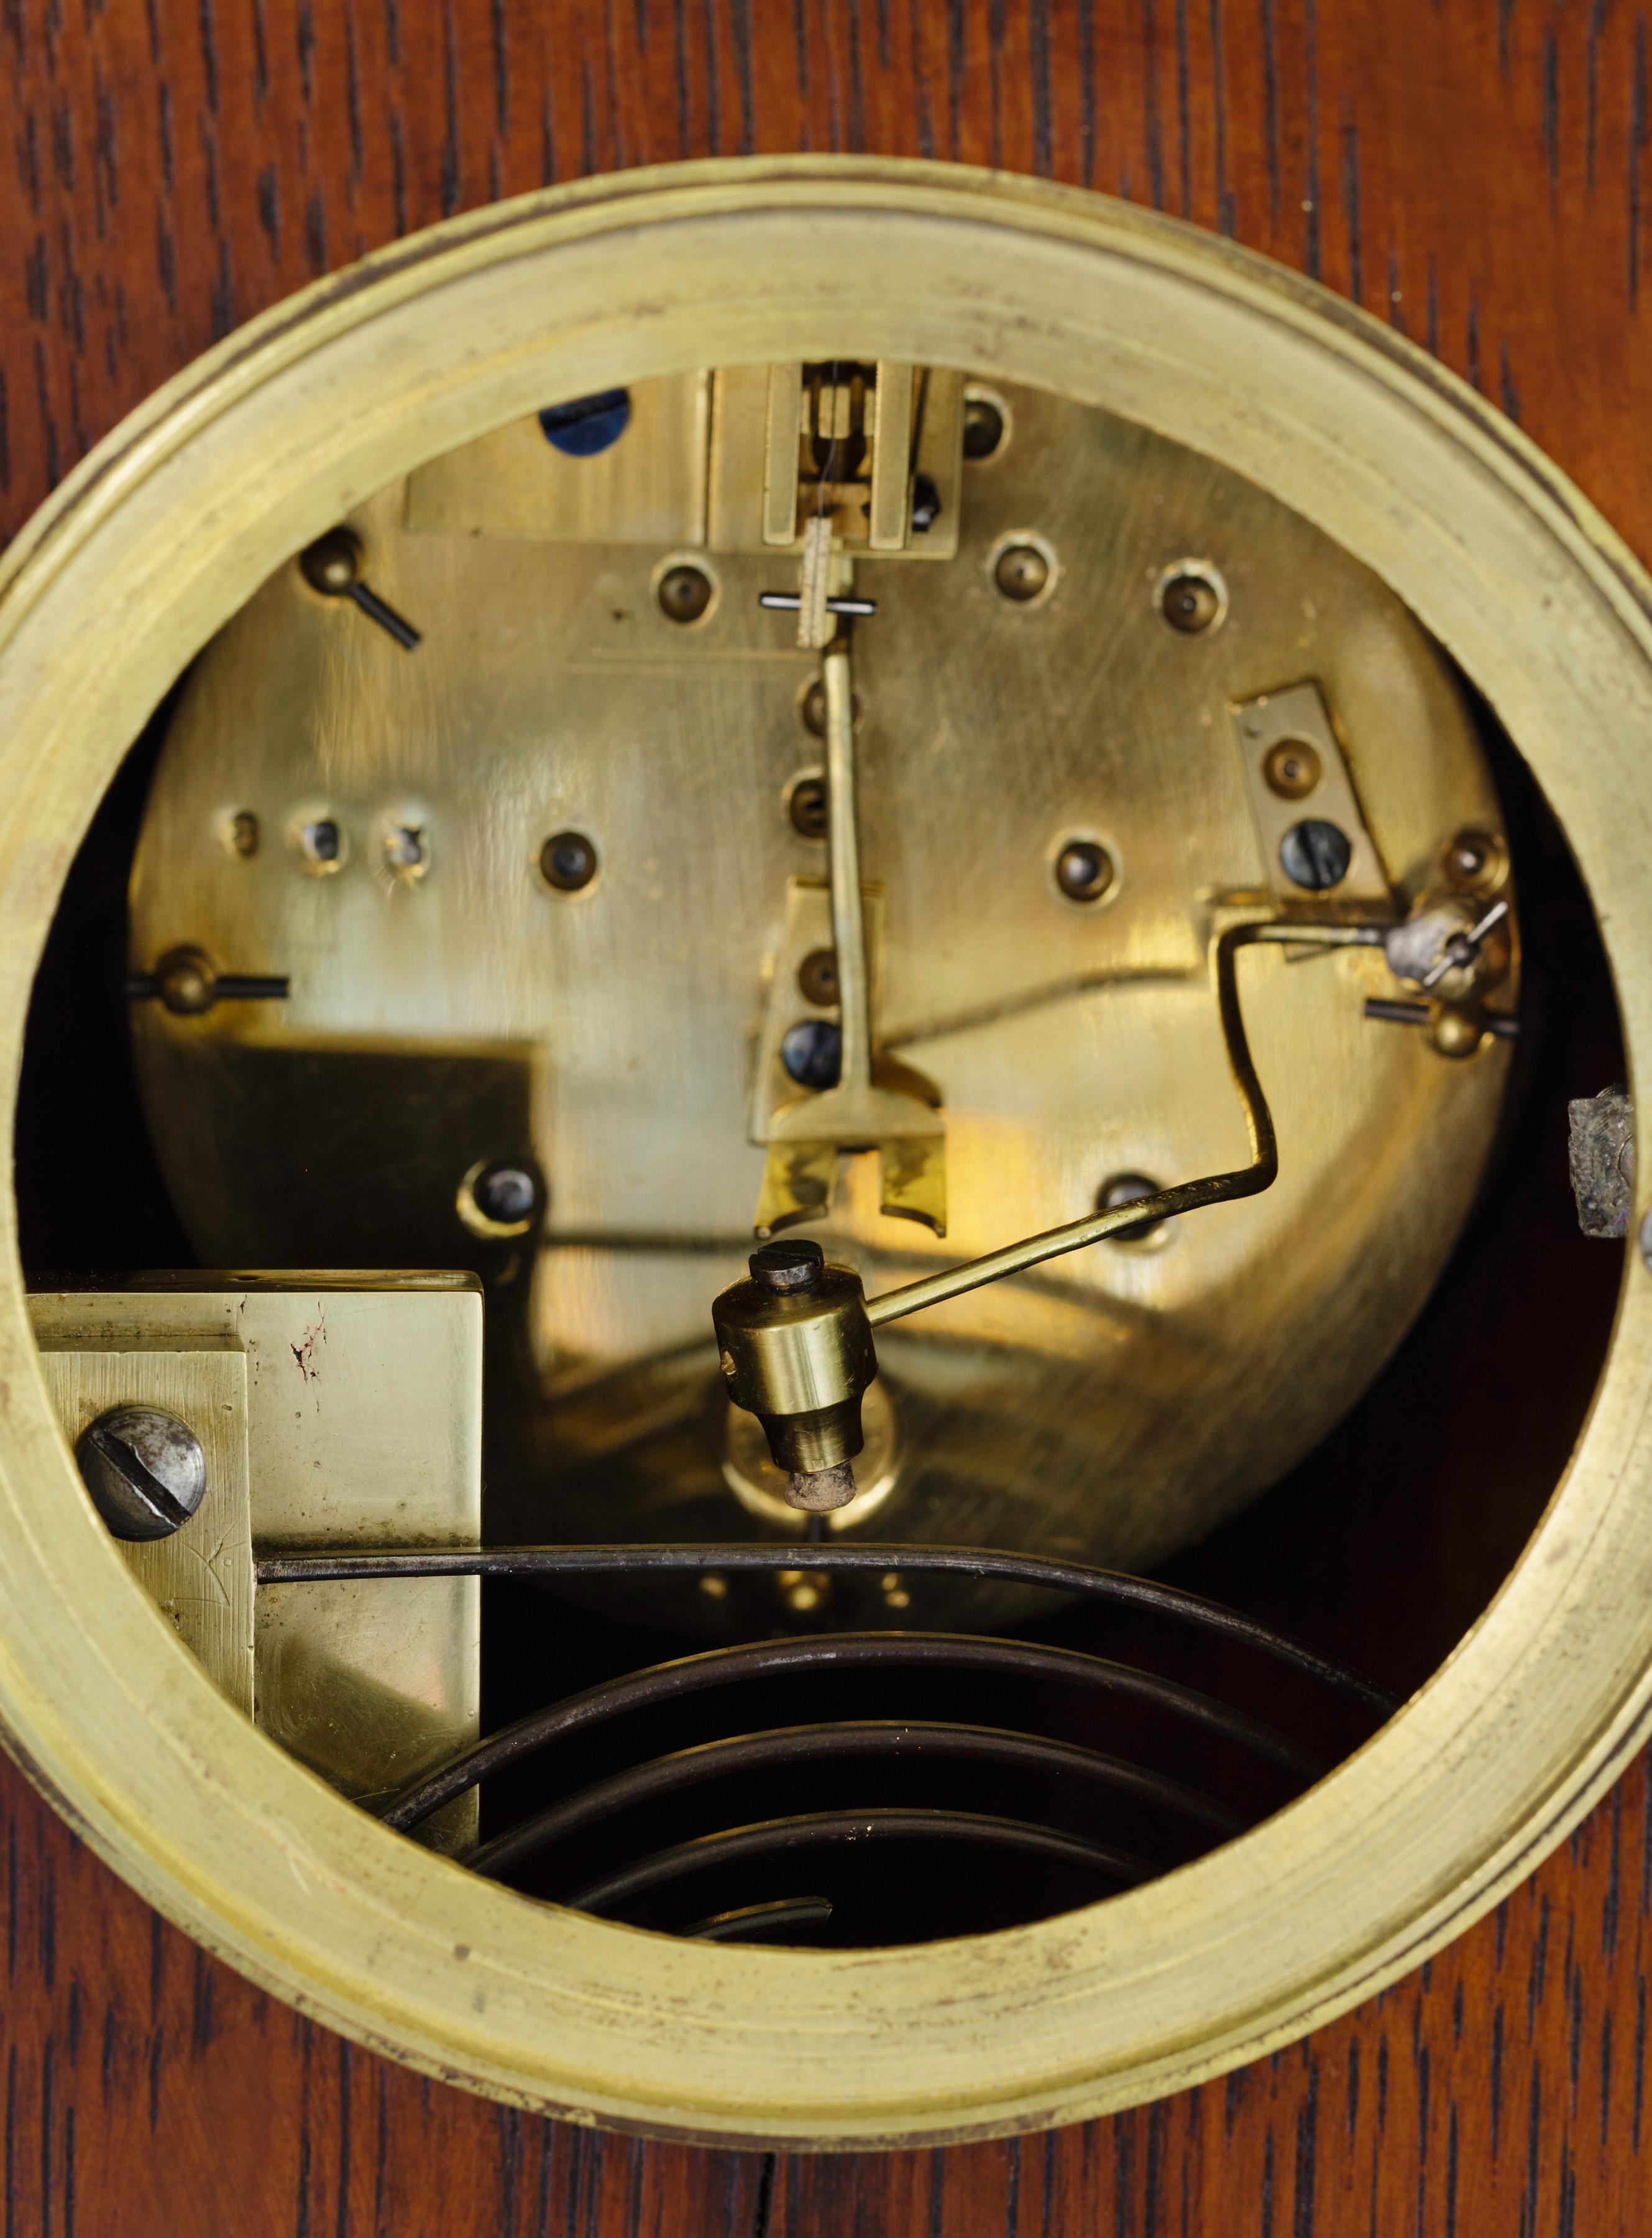 Art Nouveau Oak Cased Mantel Clock with Copper Inlay by Vecten, Paris 1